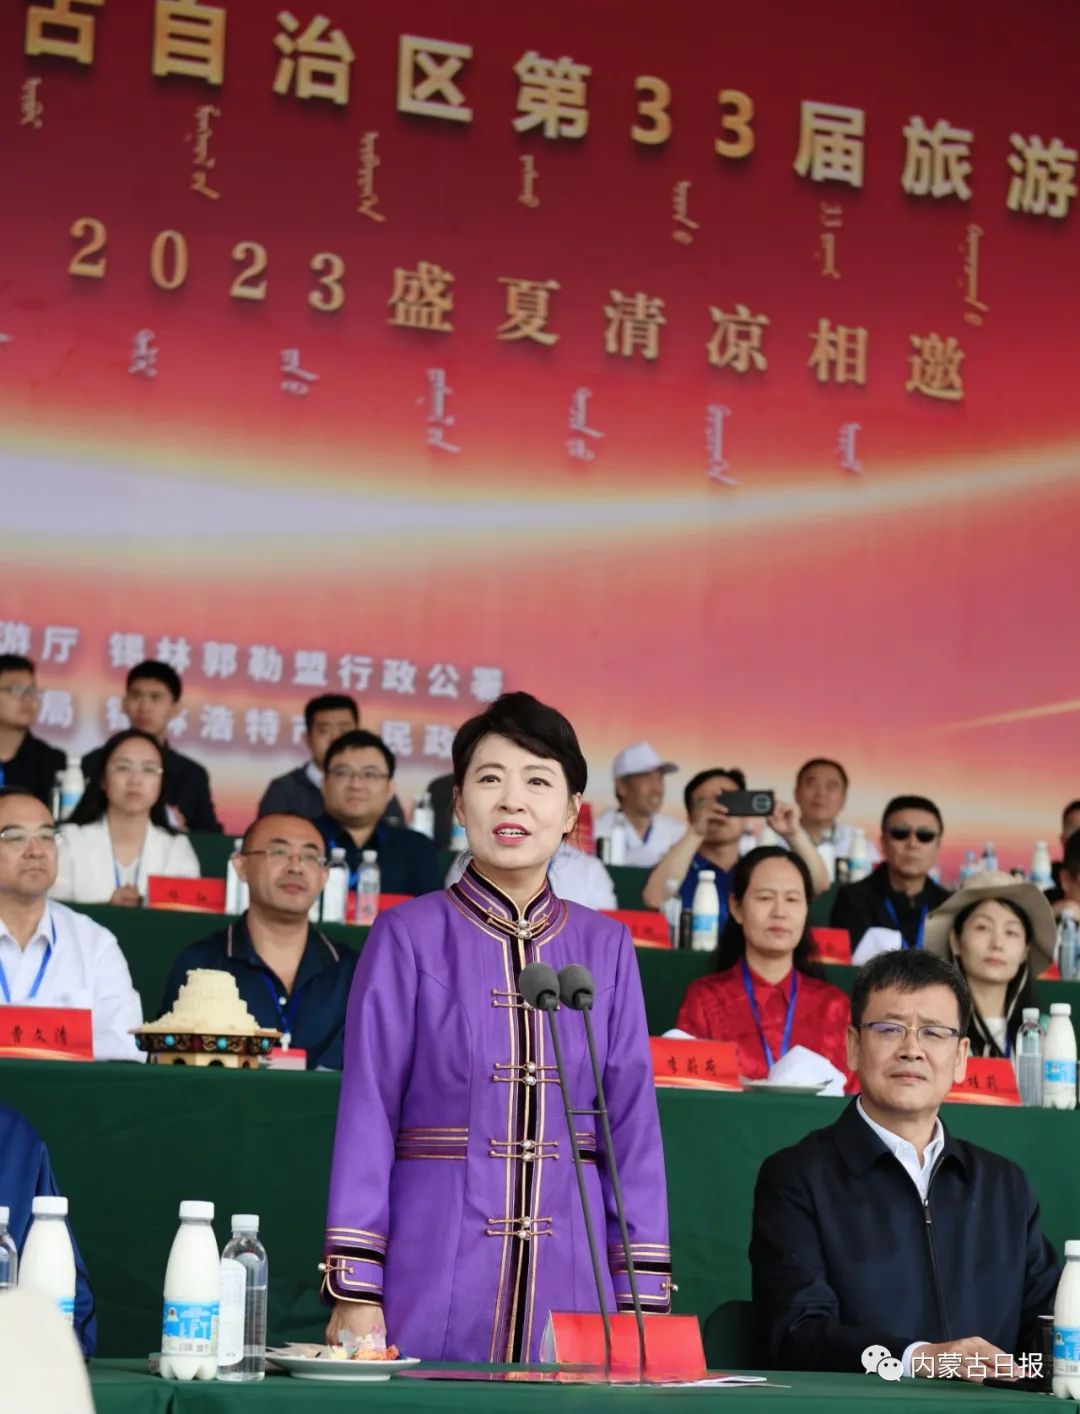 2023.7.24内蒙古自治区第33届旅游那达慕在锡林郭勒开幕王莉霞宣布那达慕开幕 1.jpg